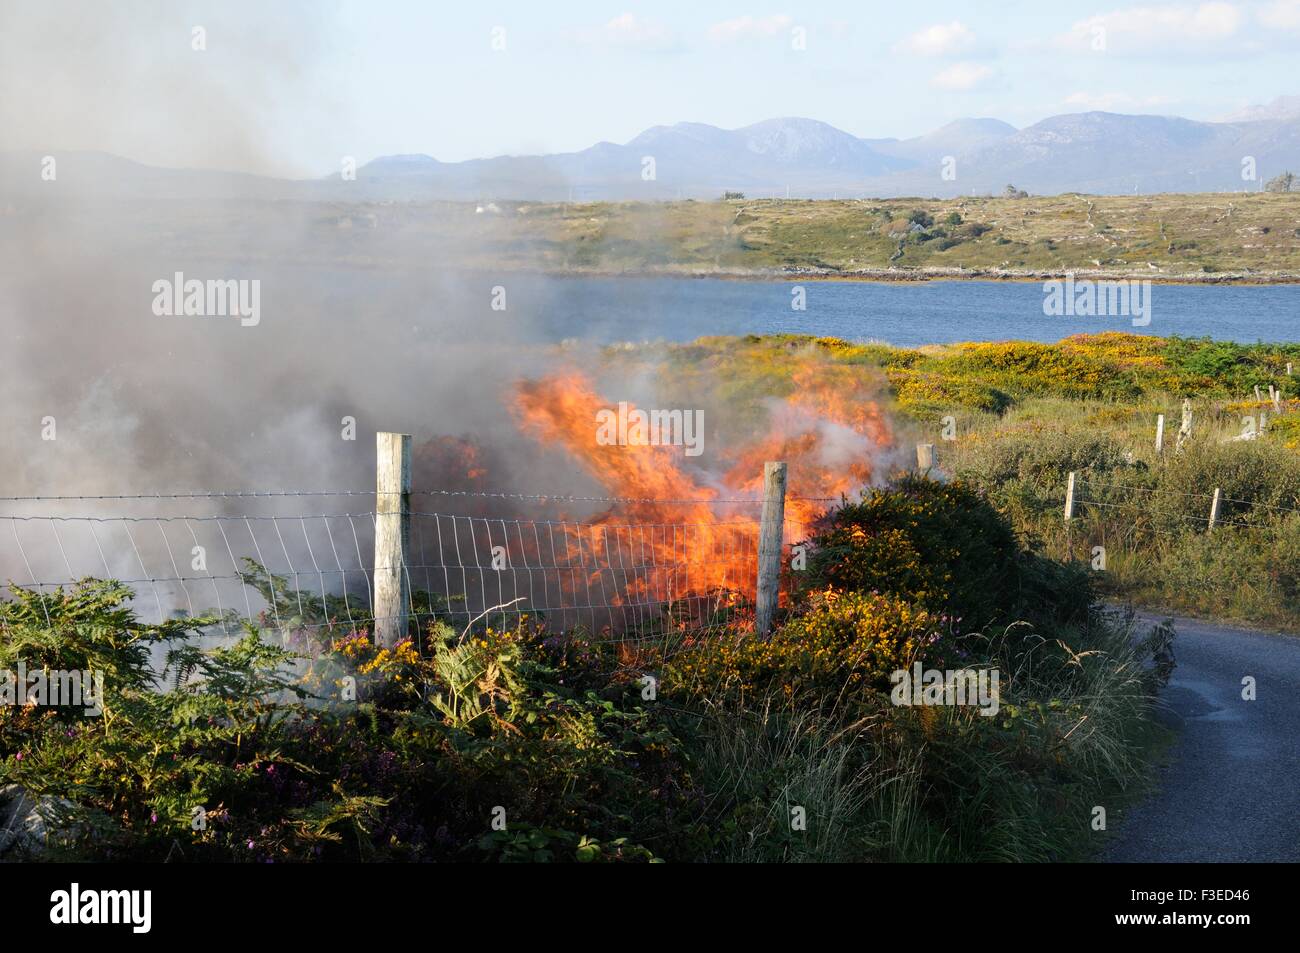 Kontrollierte Ginster und Heidekraut brennen Inishnee Roundstone Connemara Irland Stockfoto